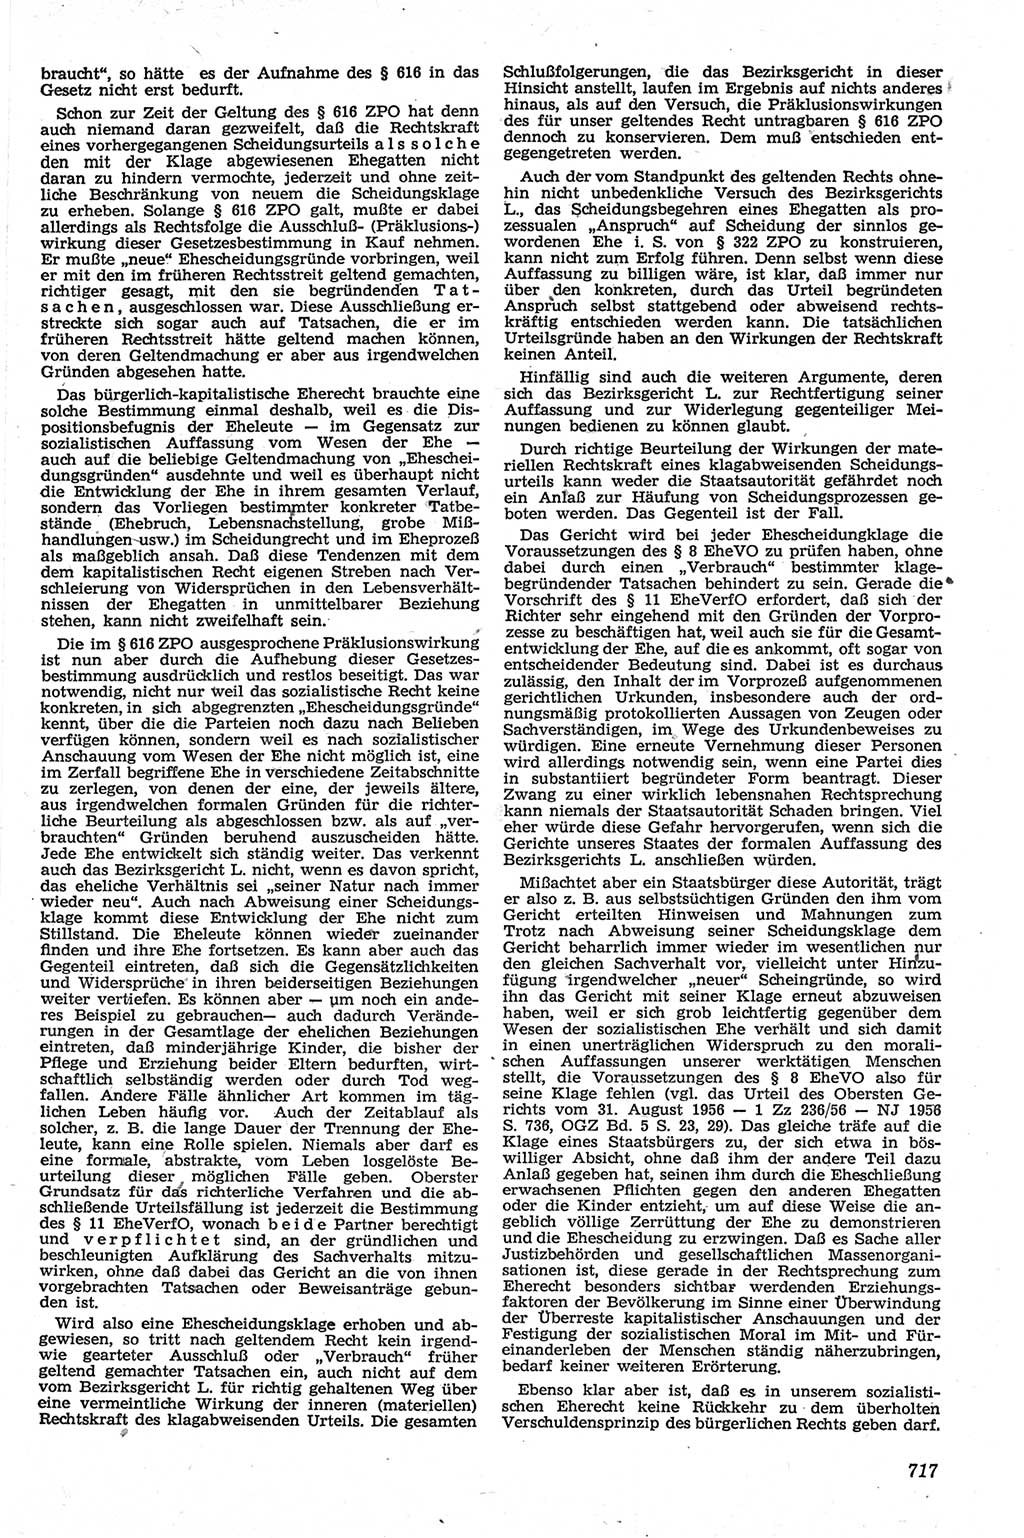 Neue Justiz (NJ), Zeitschrift für Recht und Rechtswissenschaft [Deutsche Demokratische Republik (DDR)], 13. Jahrgang 1959, Seite 717 (NJ DDR 1959, S. 717)